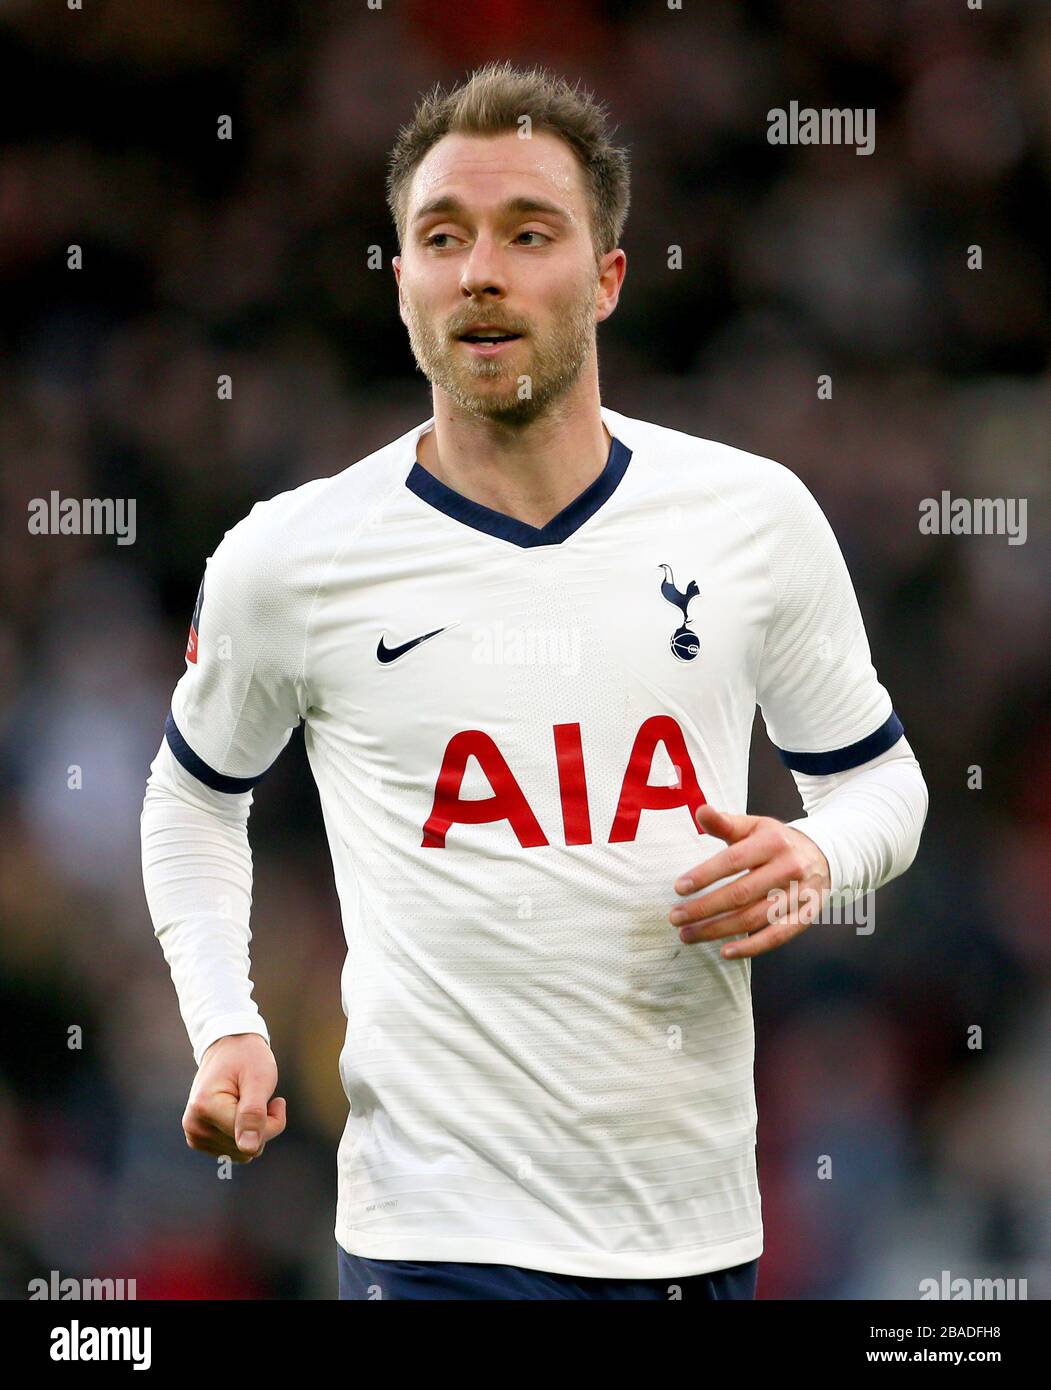 Tottenham Hotspur's Christian Eriksen in action Stock Photo - Alamy